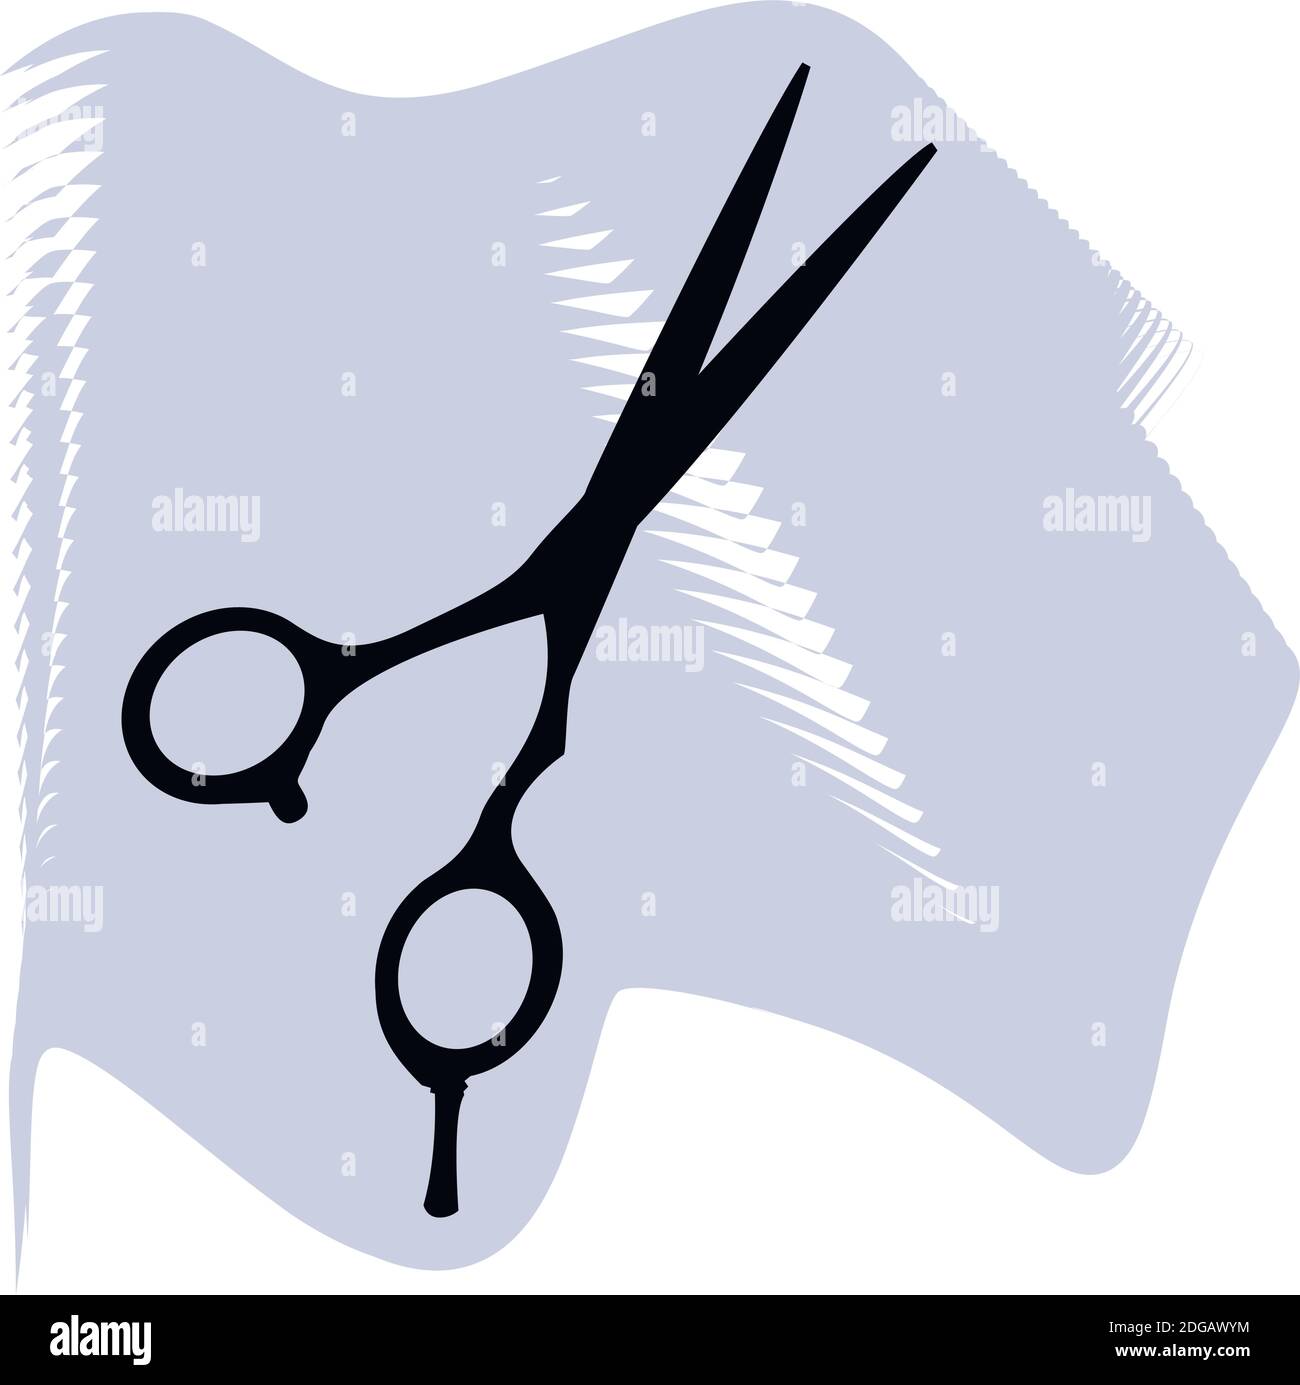 Haarscheren Vektor, Friseur, Salon, Haar, schwarze Schere auf lila Punkt Symbol eines Sets, isoliert auf weißem Hintergrund. EPS 10 Stock Vektor